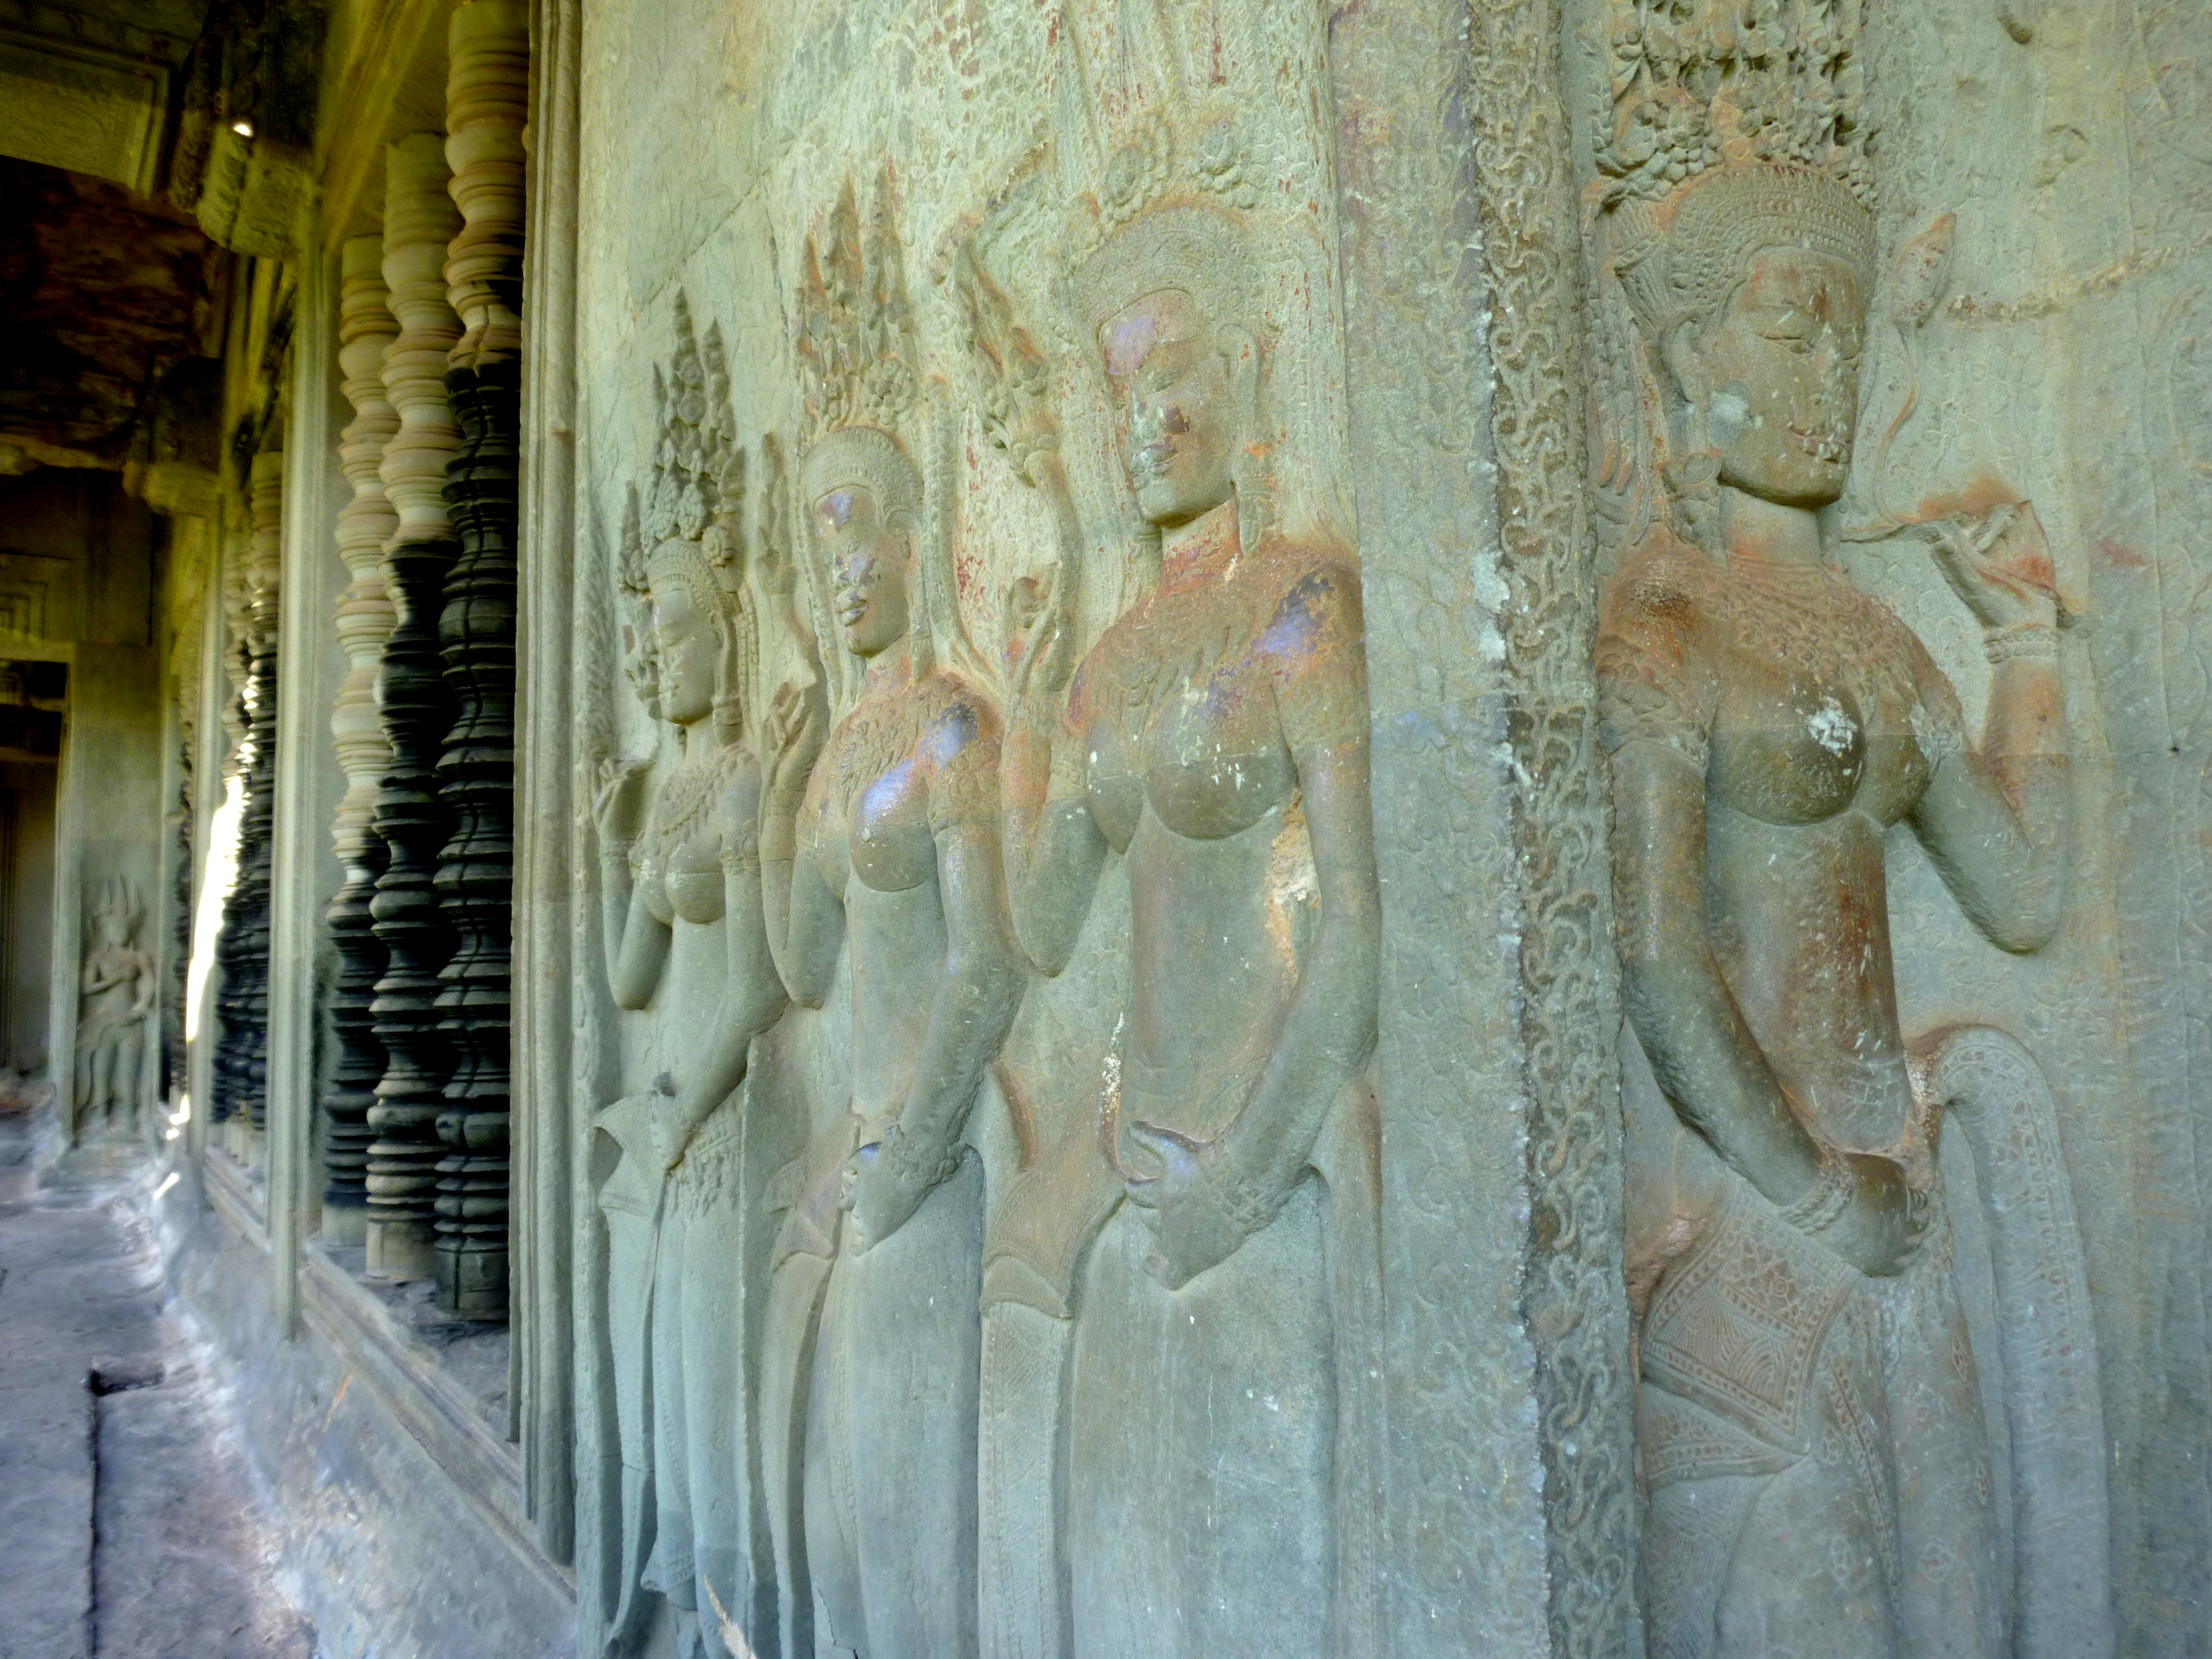 Angkor Apsara figures